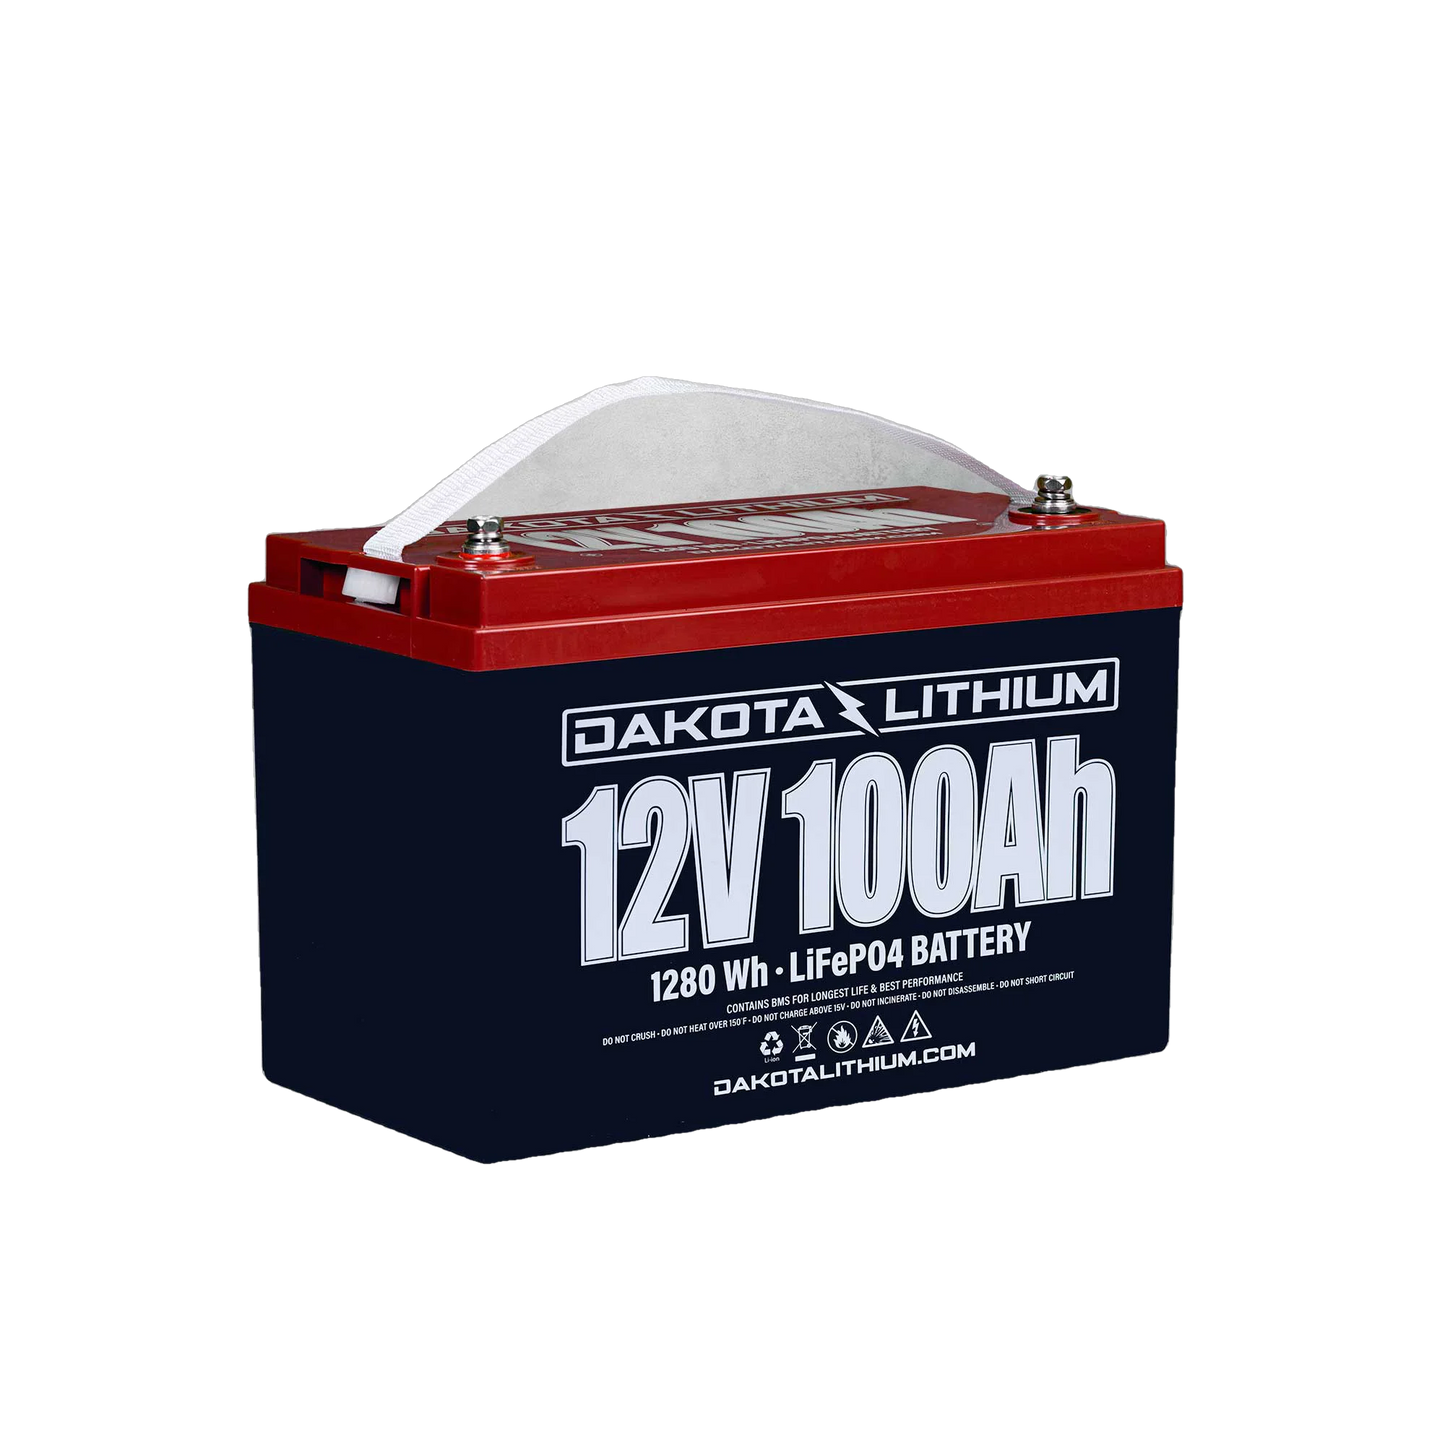 Dakota Lithium 12V 100AH Trailer / RV battery